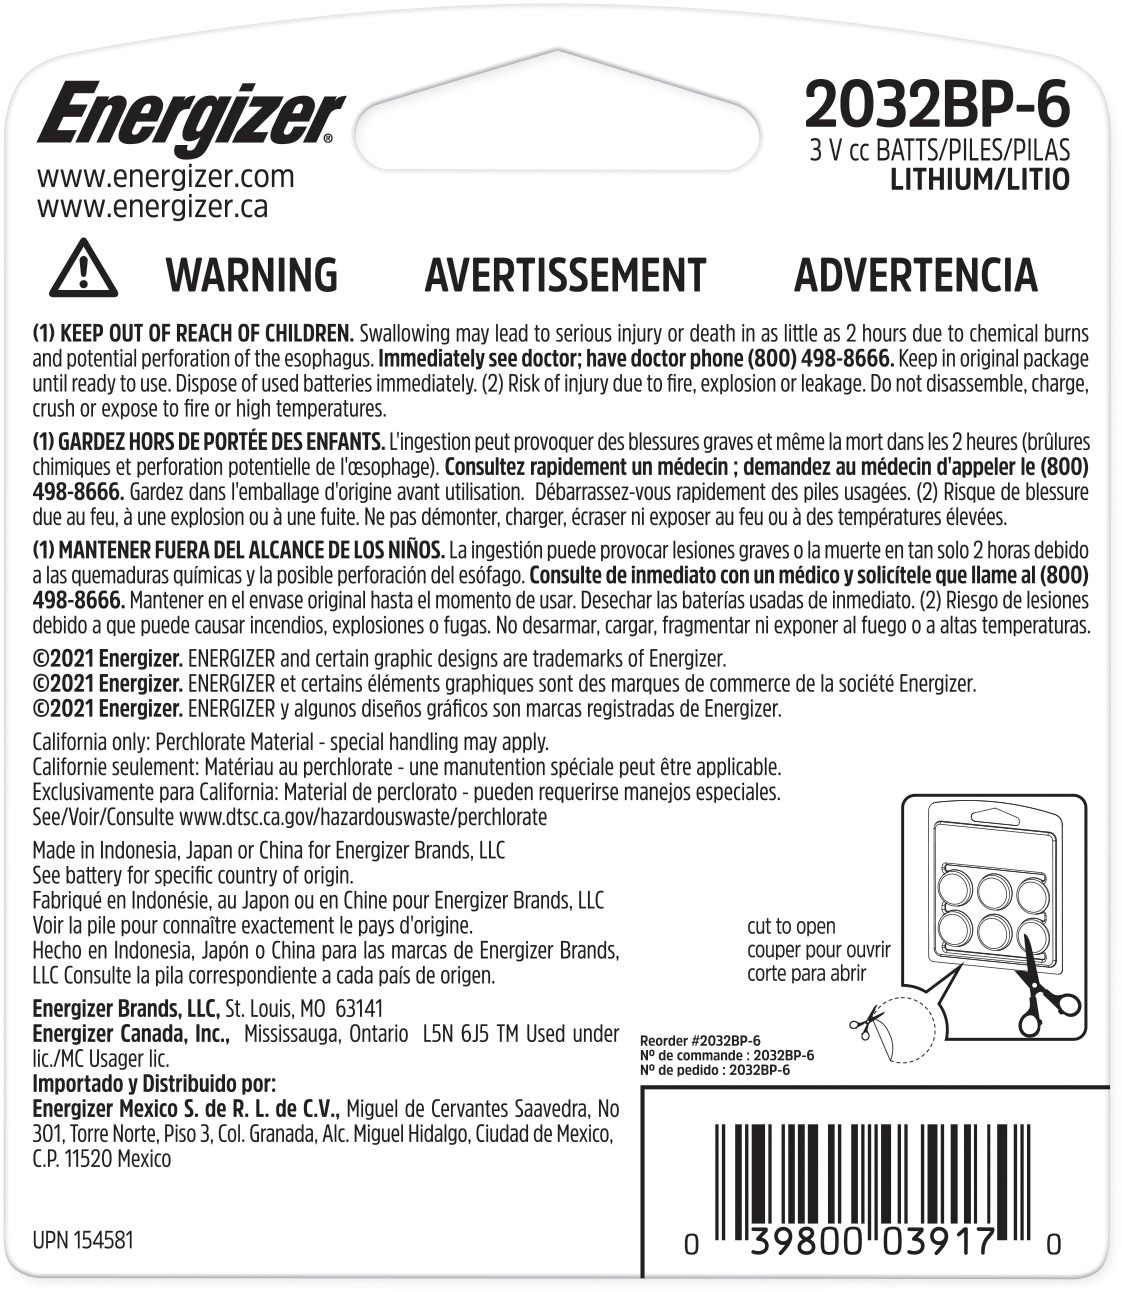 Pile CR2032 Energizer Lot de 6 piles CR2032 Lithium 3 Volts - Pile bouton  235 mAh - Date de péremption 2031 - Piles - Achat & prix